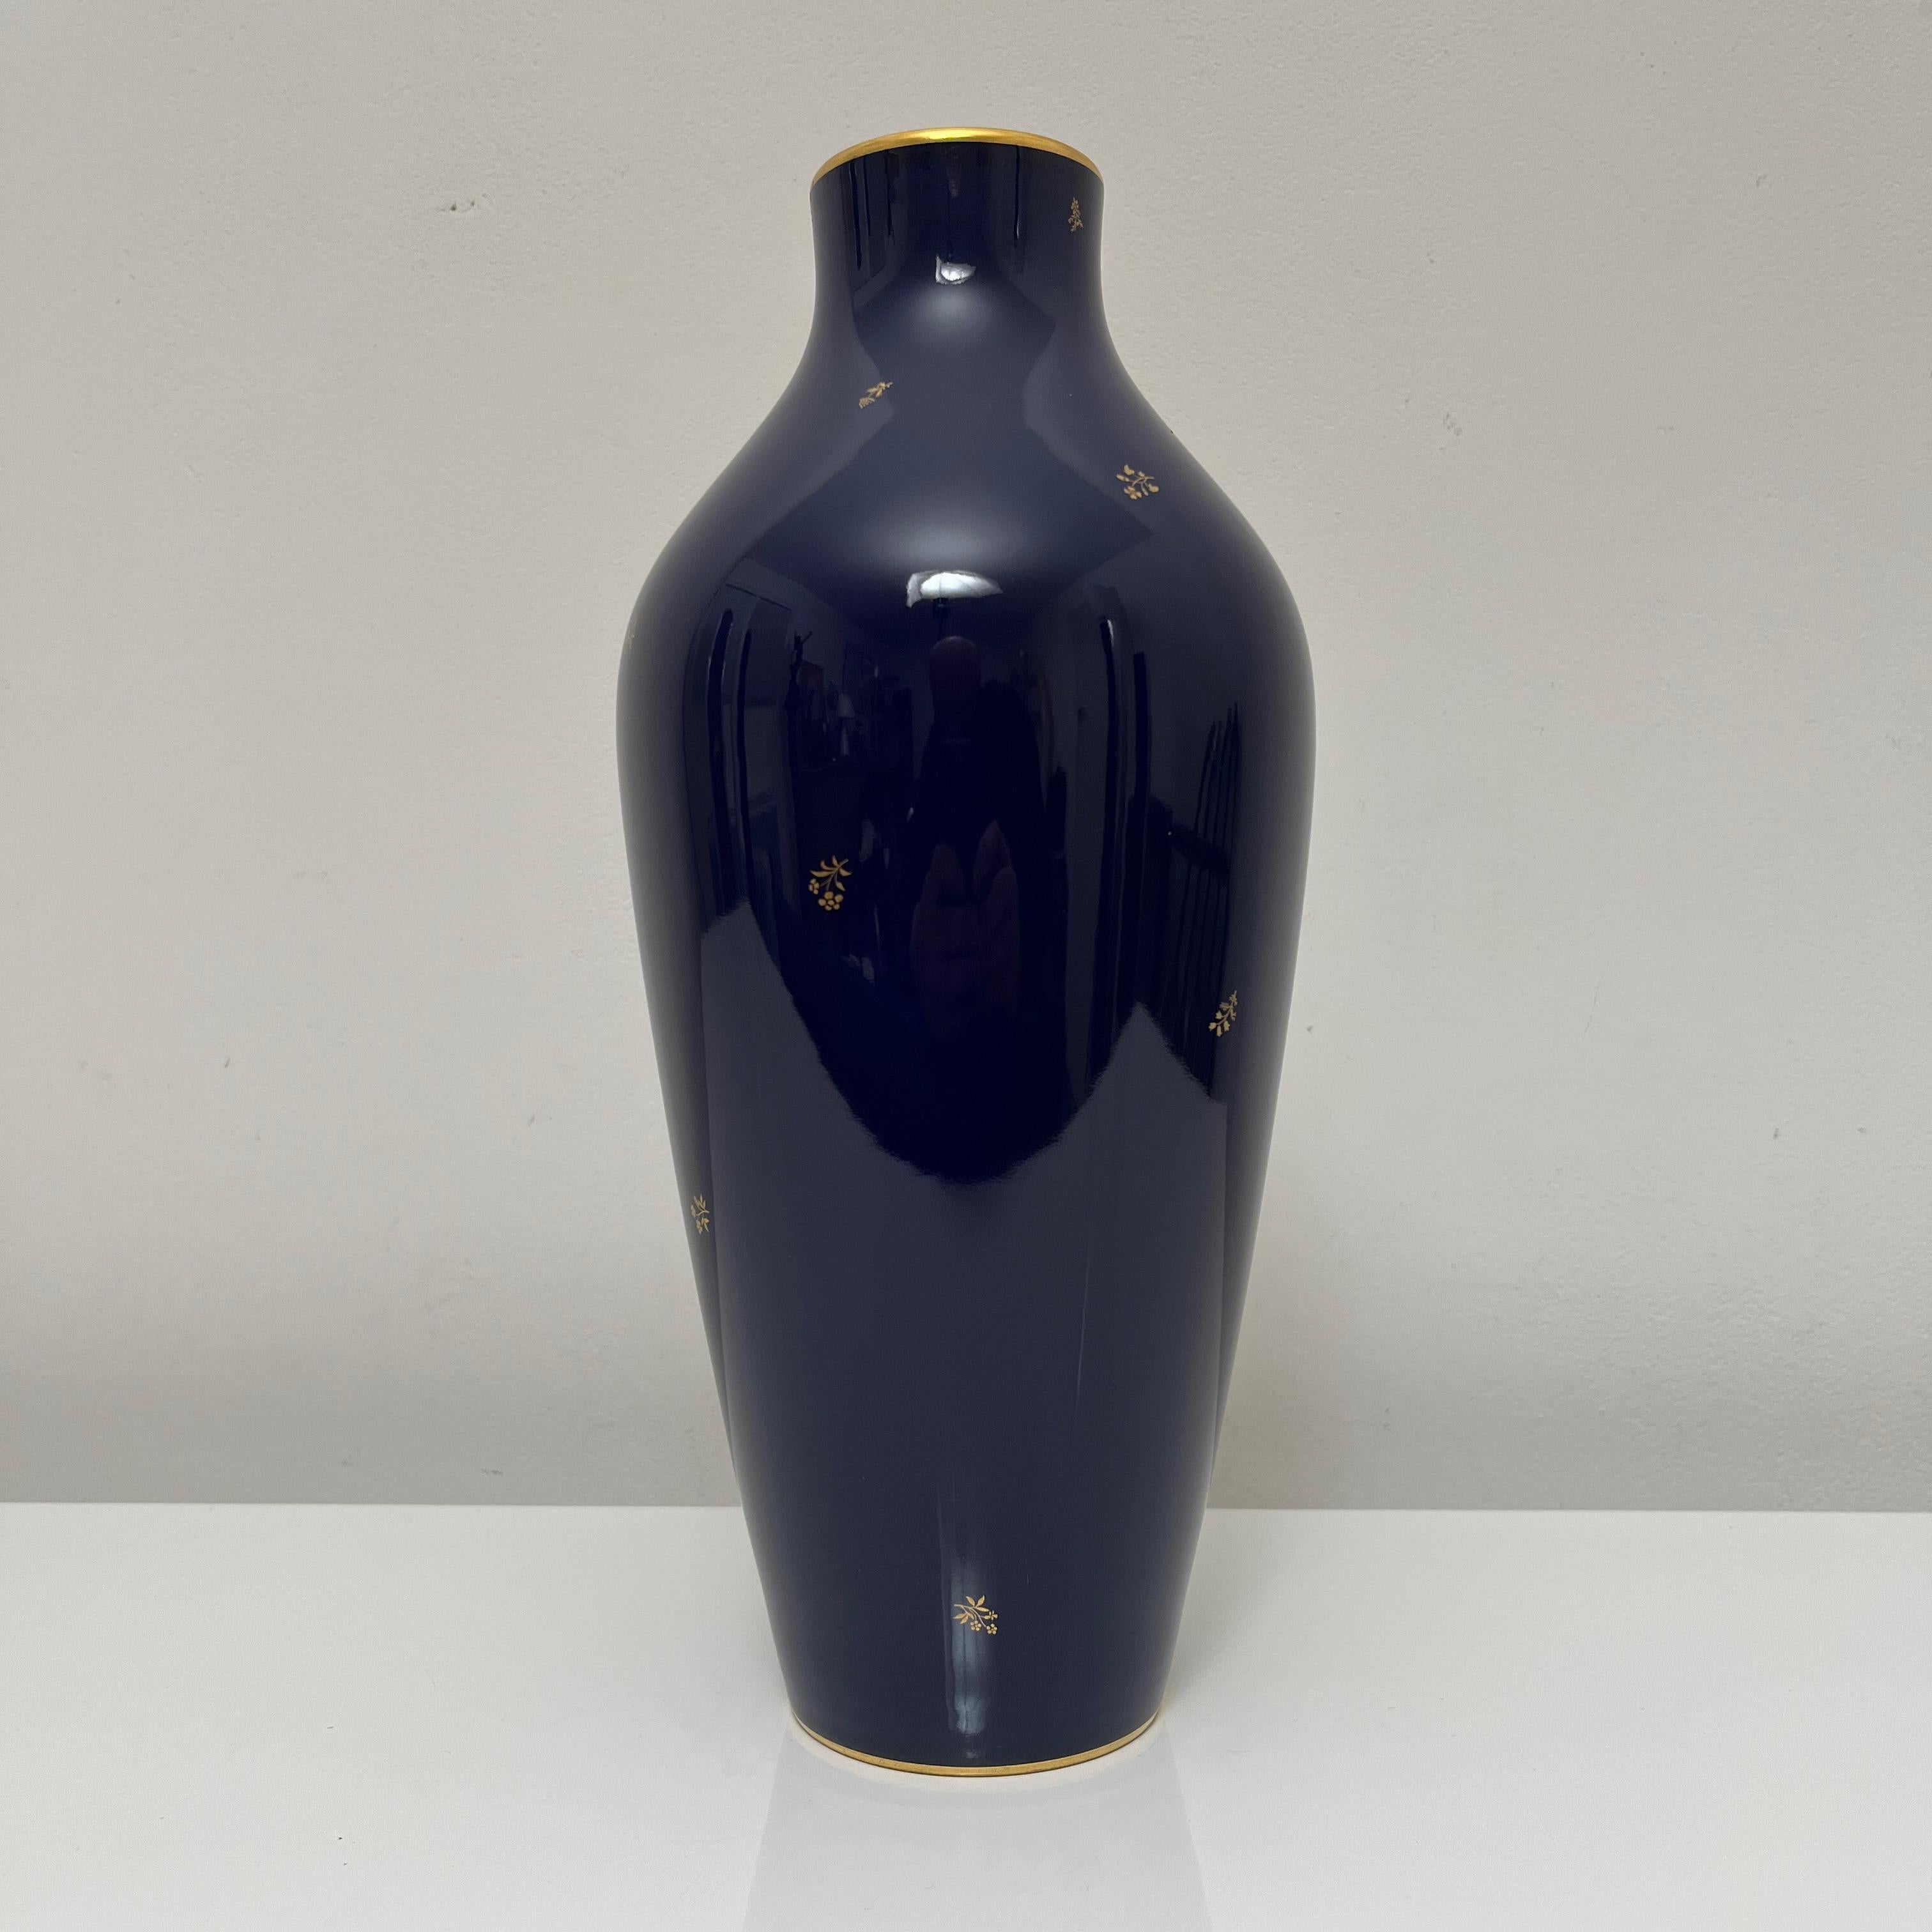 Wunderschöne Vase aus der Nationalen Manufaktur von Sèvres, bekannt für ihre außergewöhnliche kobaltblaue Farbe, die als 